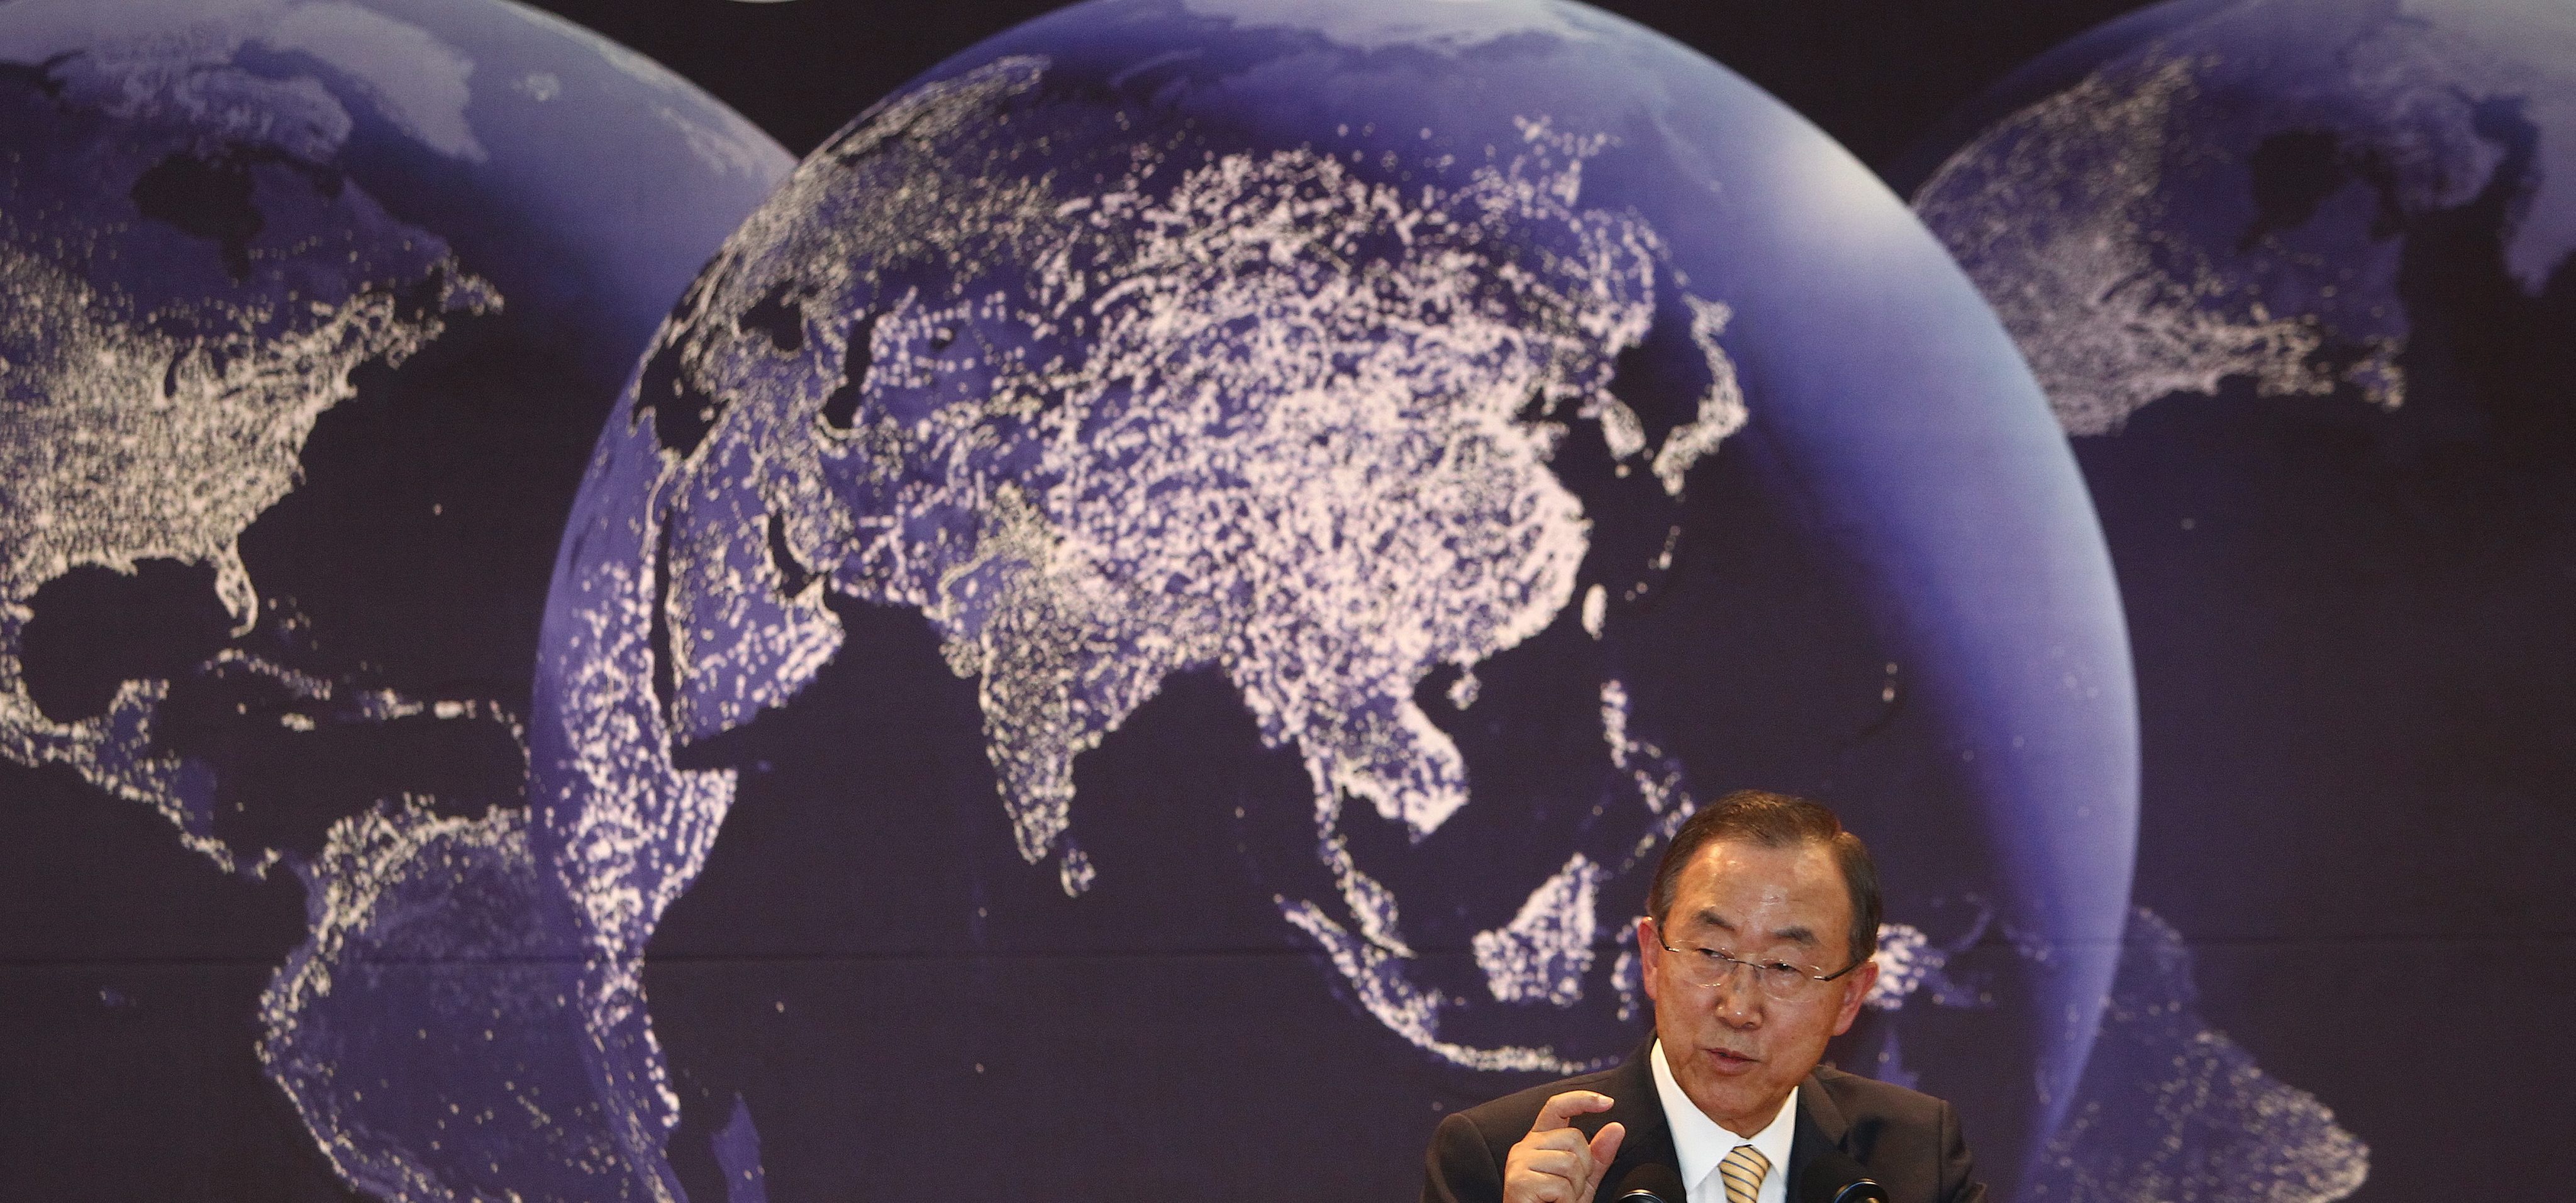 Der UN-Generalsekretär Ban Ki-moon strebt globale Post-2015-Ziele an, die von möglichst vielen Akteuren mitgetragen werden.